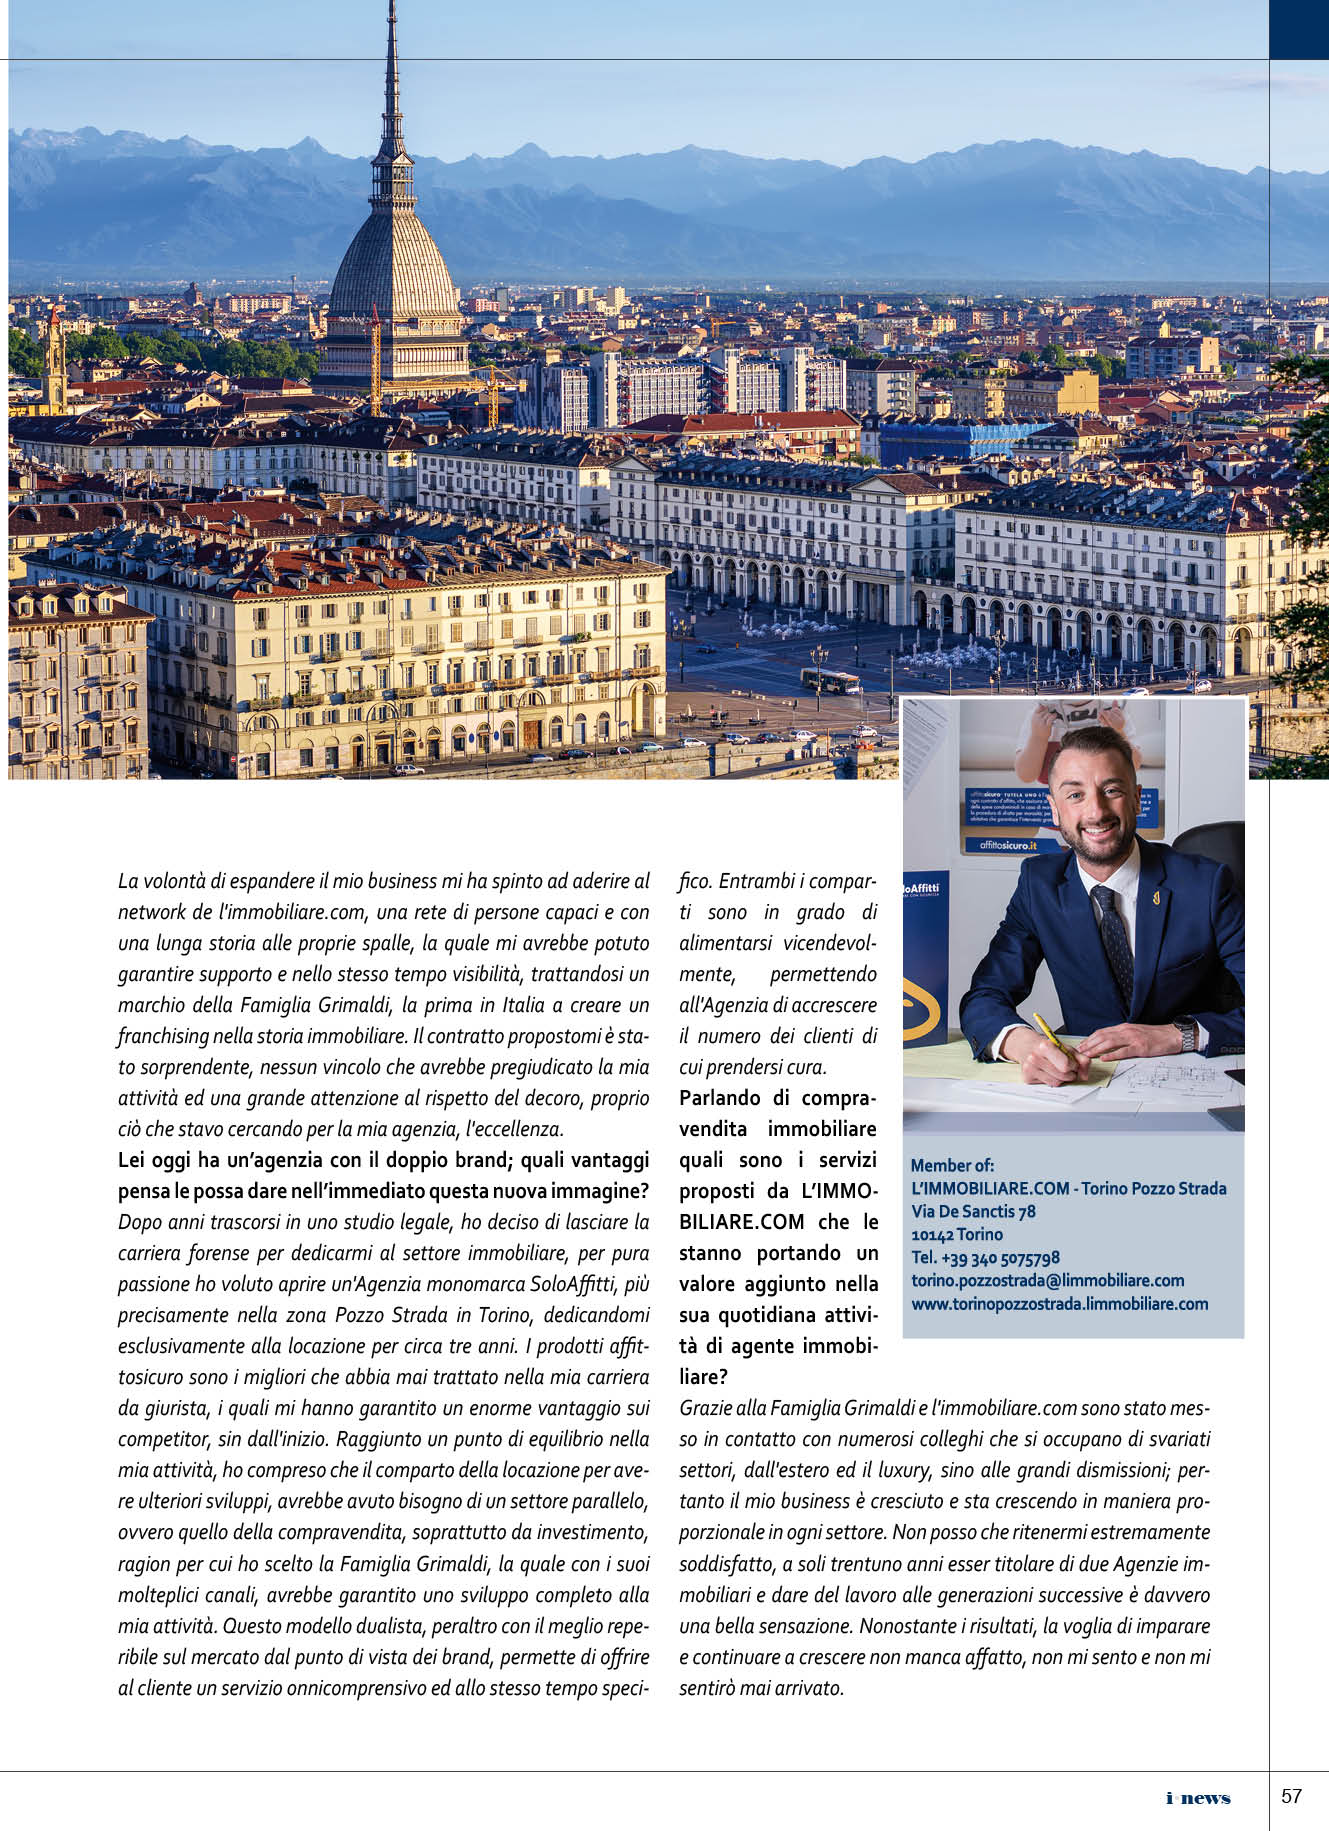 L'immobiliare.com Milano Corsica 2